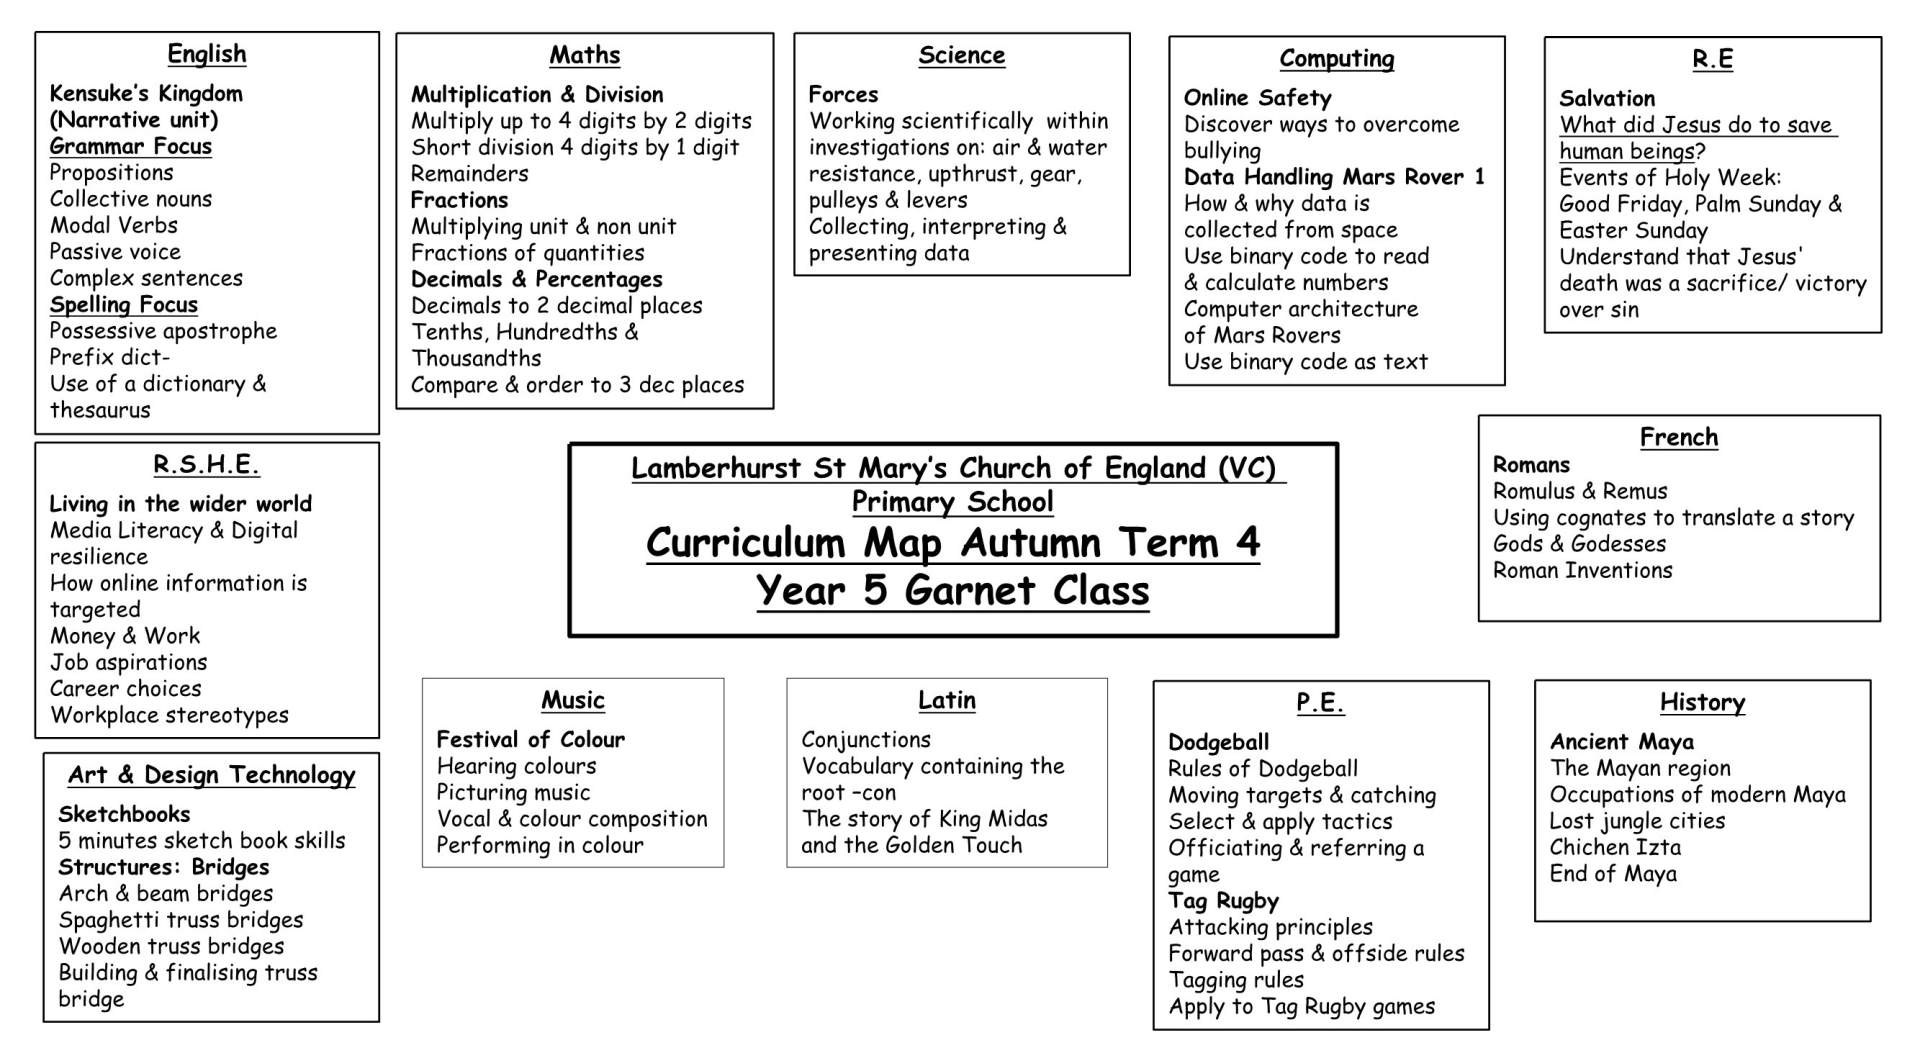 Y5 Curriculum Map T4